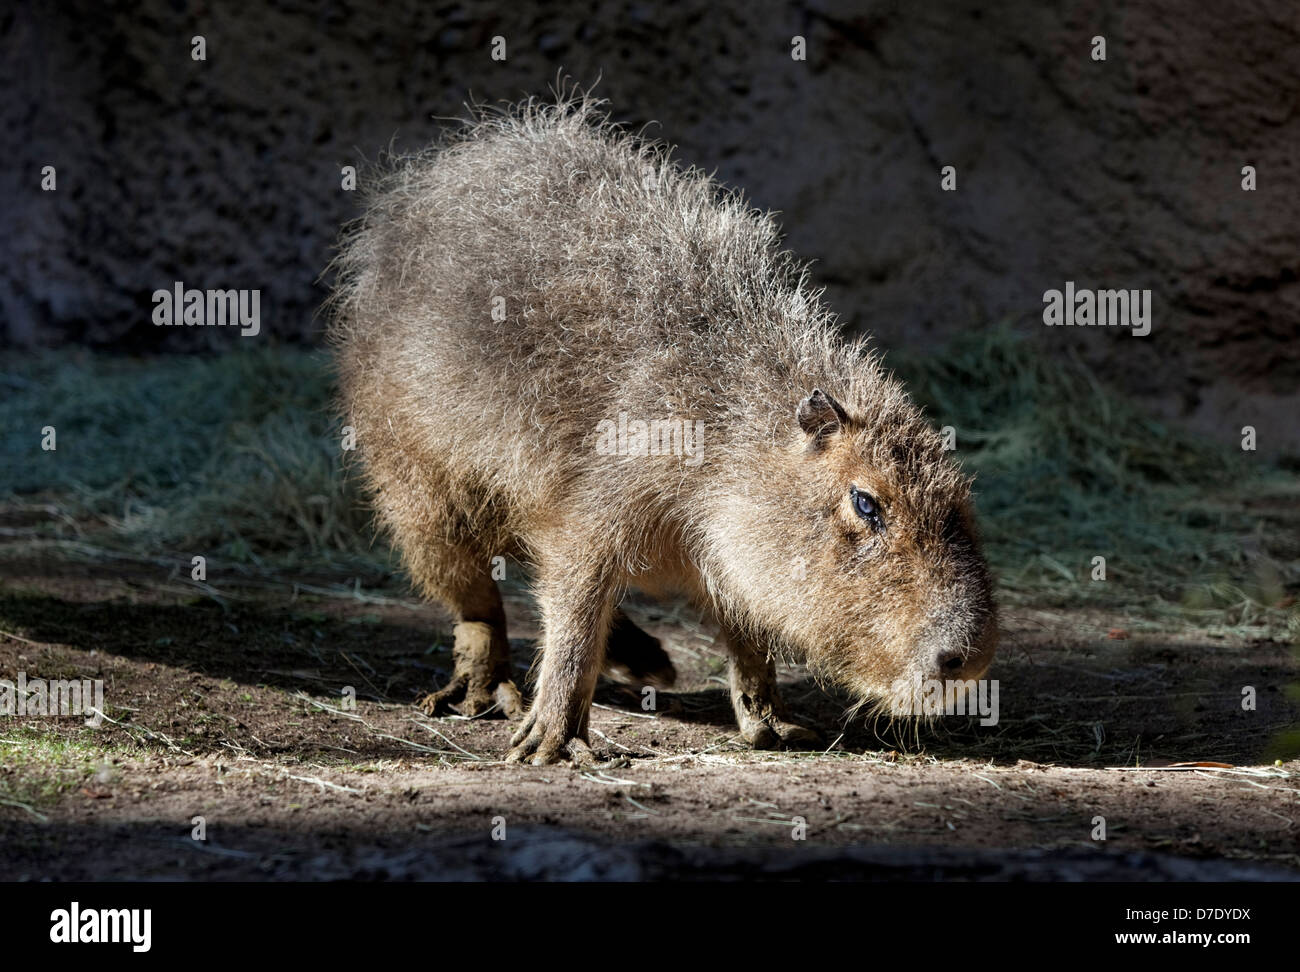 Capybara (Hydrochoerus hydrochaeris) - Le plus grand rongeur du monde Banque D'Images